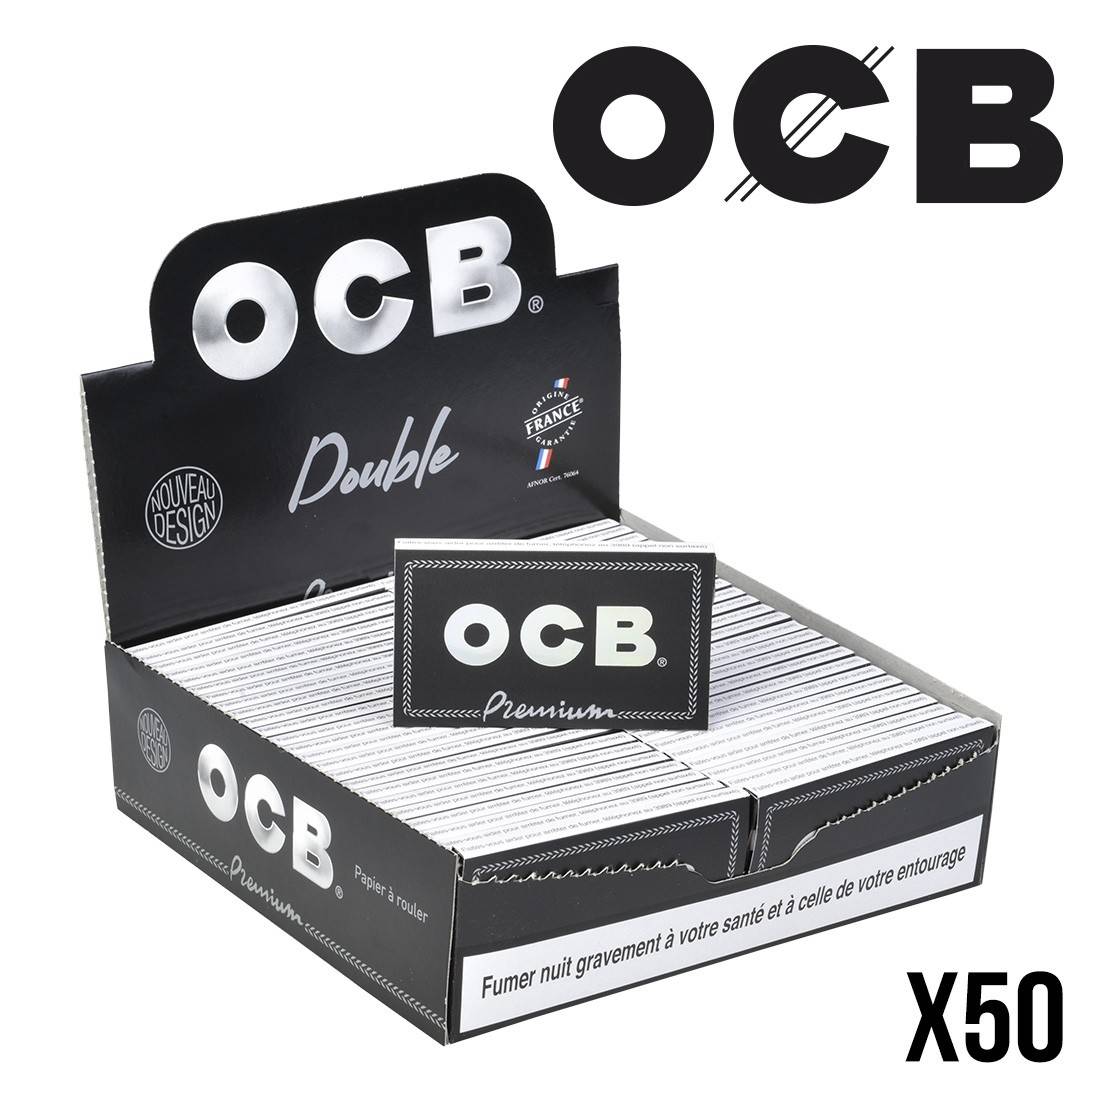 Ocb regular double premium acheter, Feuilles petit format